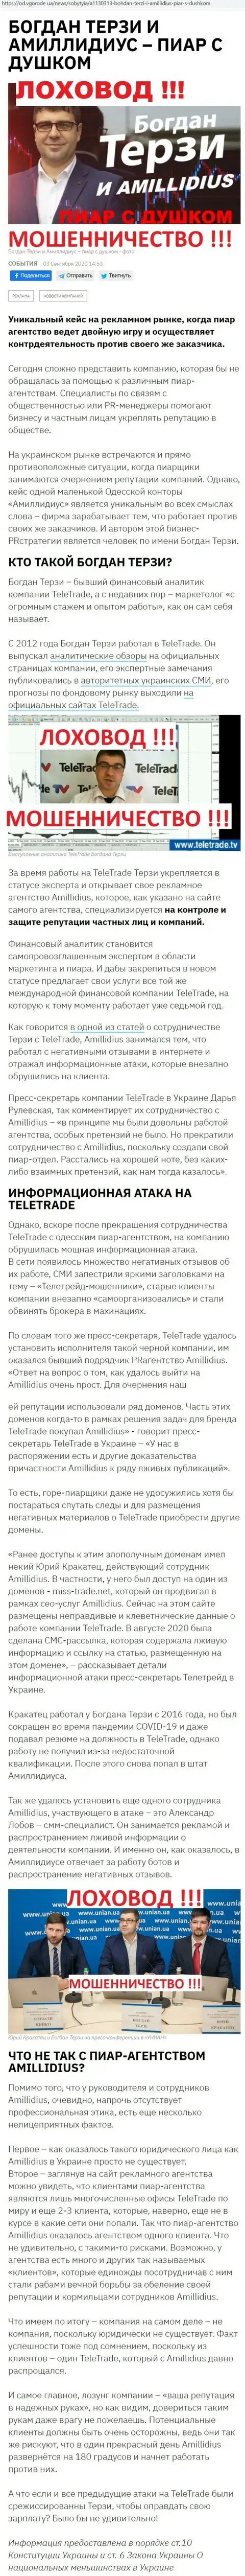 Богдан Терзи ненадежный партнер, информация со слов бывшего сотрудника пиар организации Амиллидиус Ком